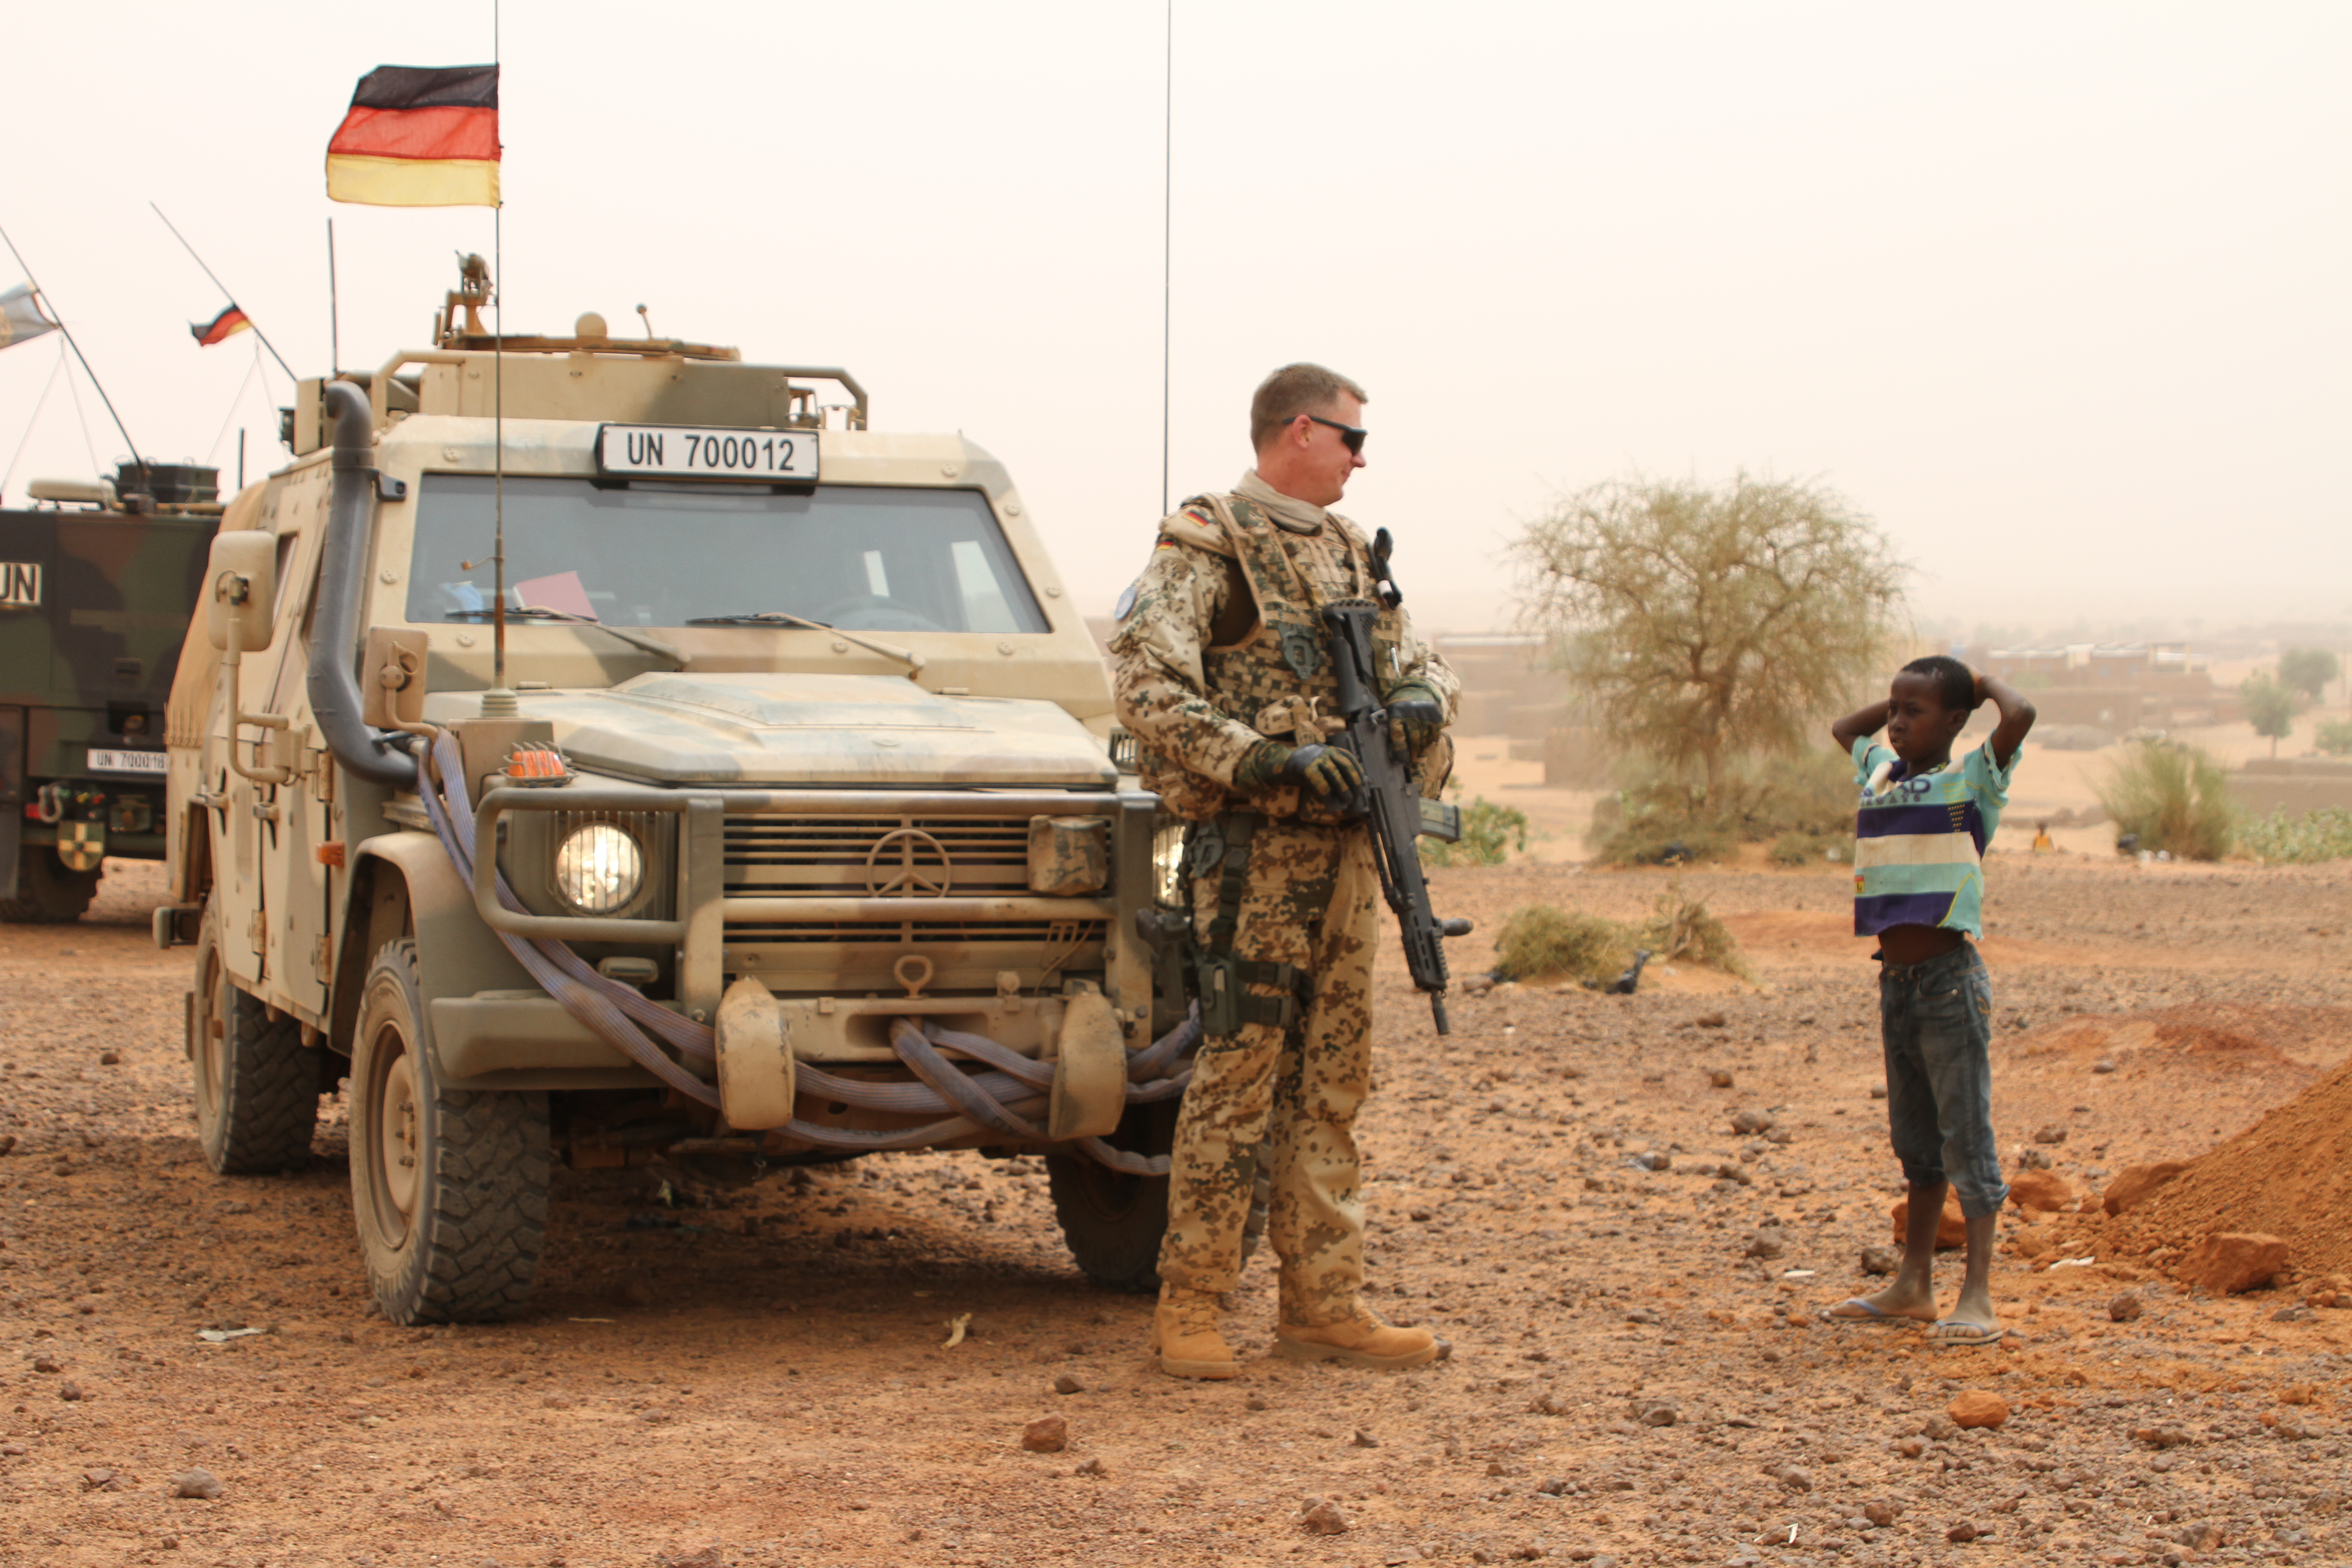 Lerobbantak a hőségtől a német hadsereg gépei Maliban